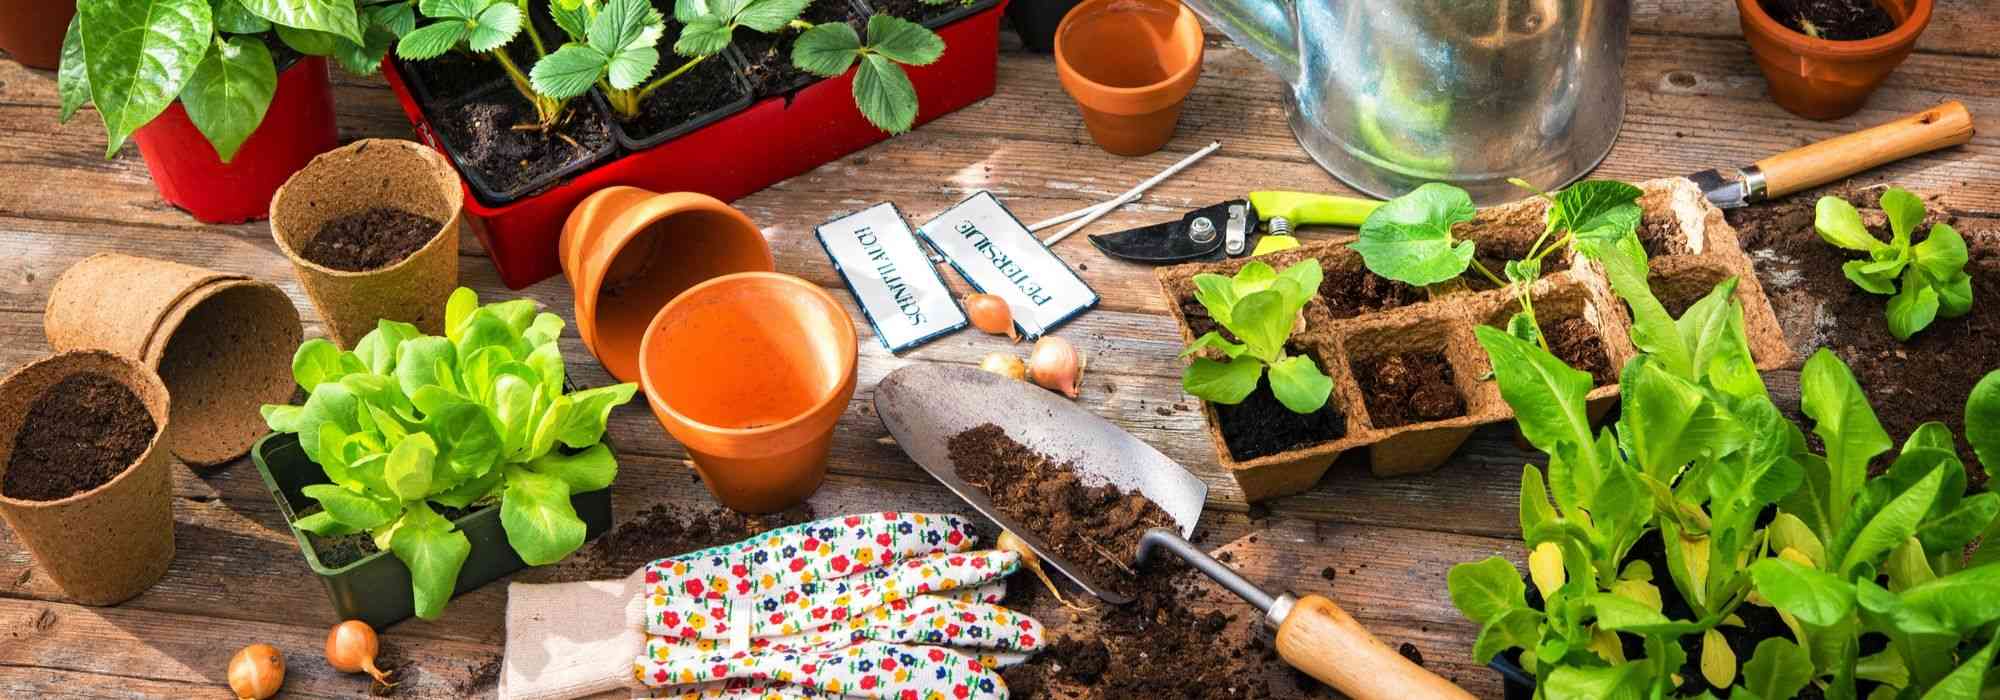 Kit Graine herbes aromatiques BIO, 12 différentes graines potager - Ton  propre jardin herbes aromatiques pour la cuisine ou le balcon